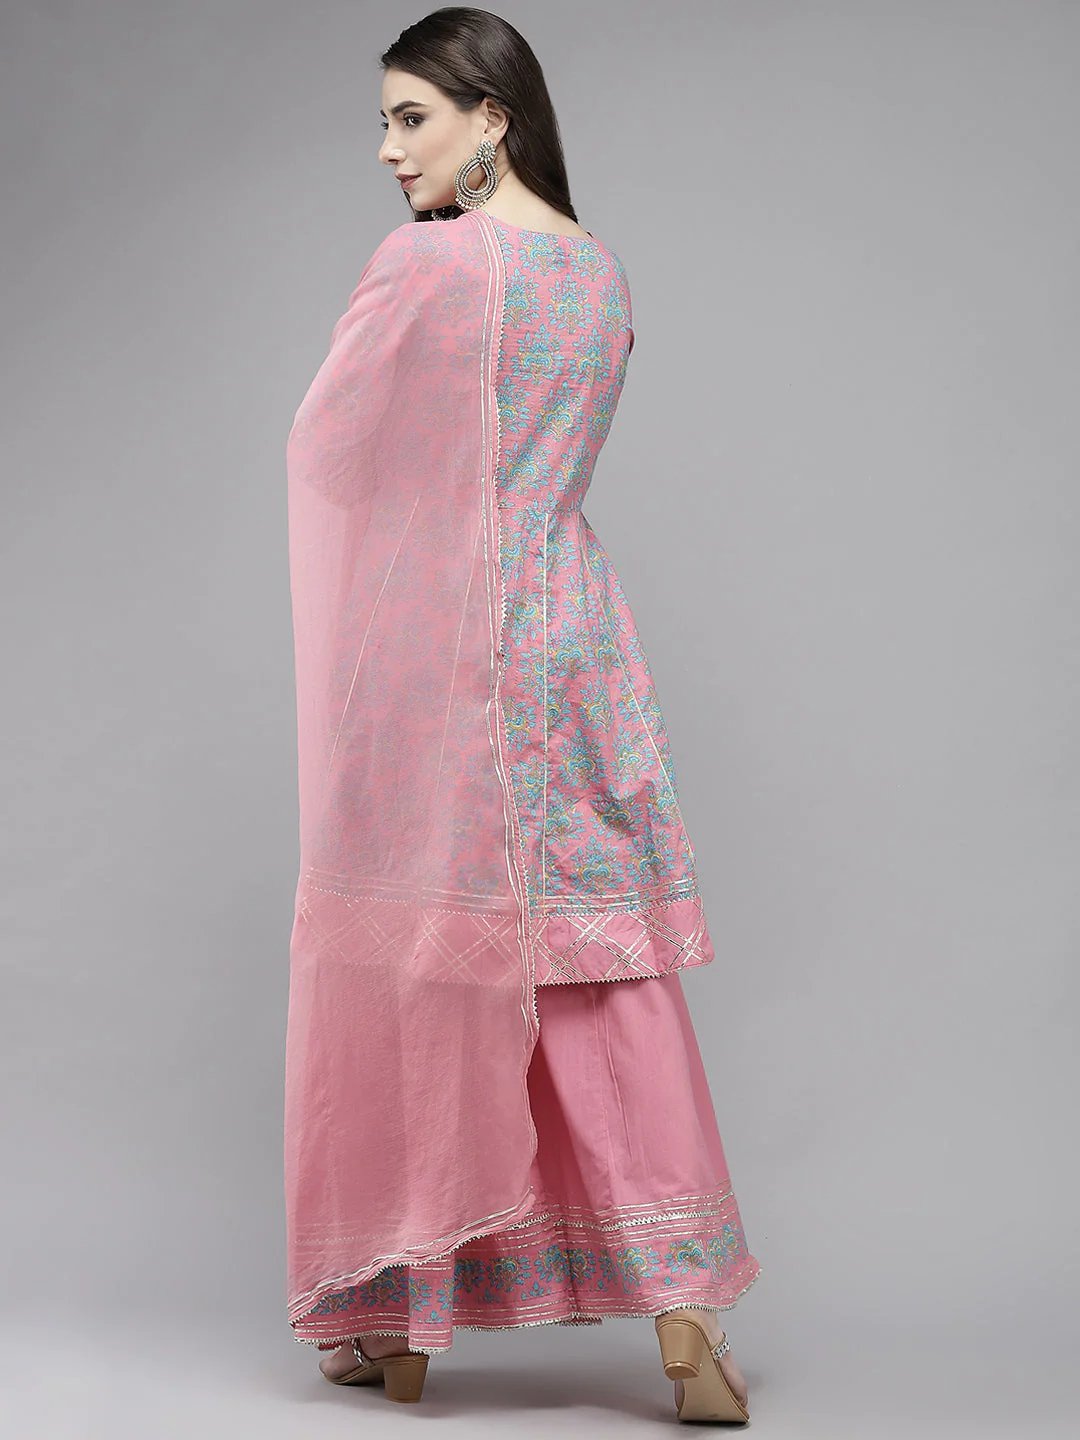 Art Avenue Women's Cotton Blend Pink Embroidered Peplum Kurta Sharara Dupatta Set - ART AVENUE